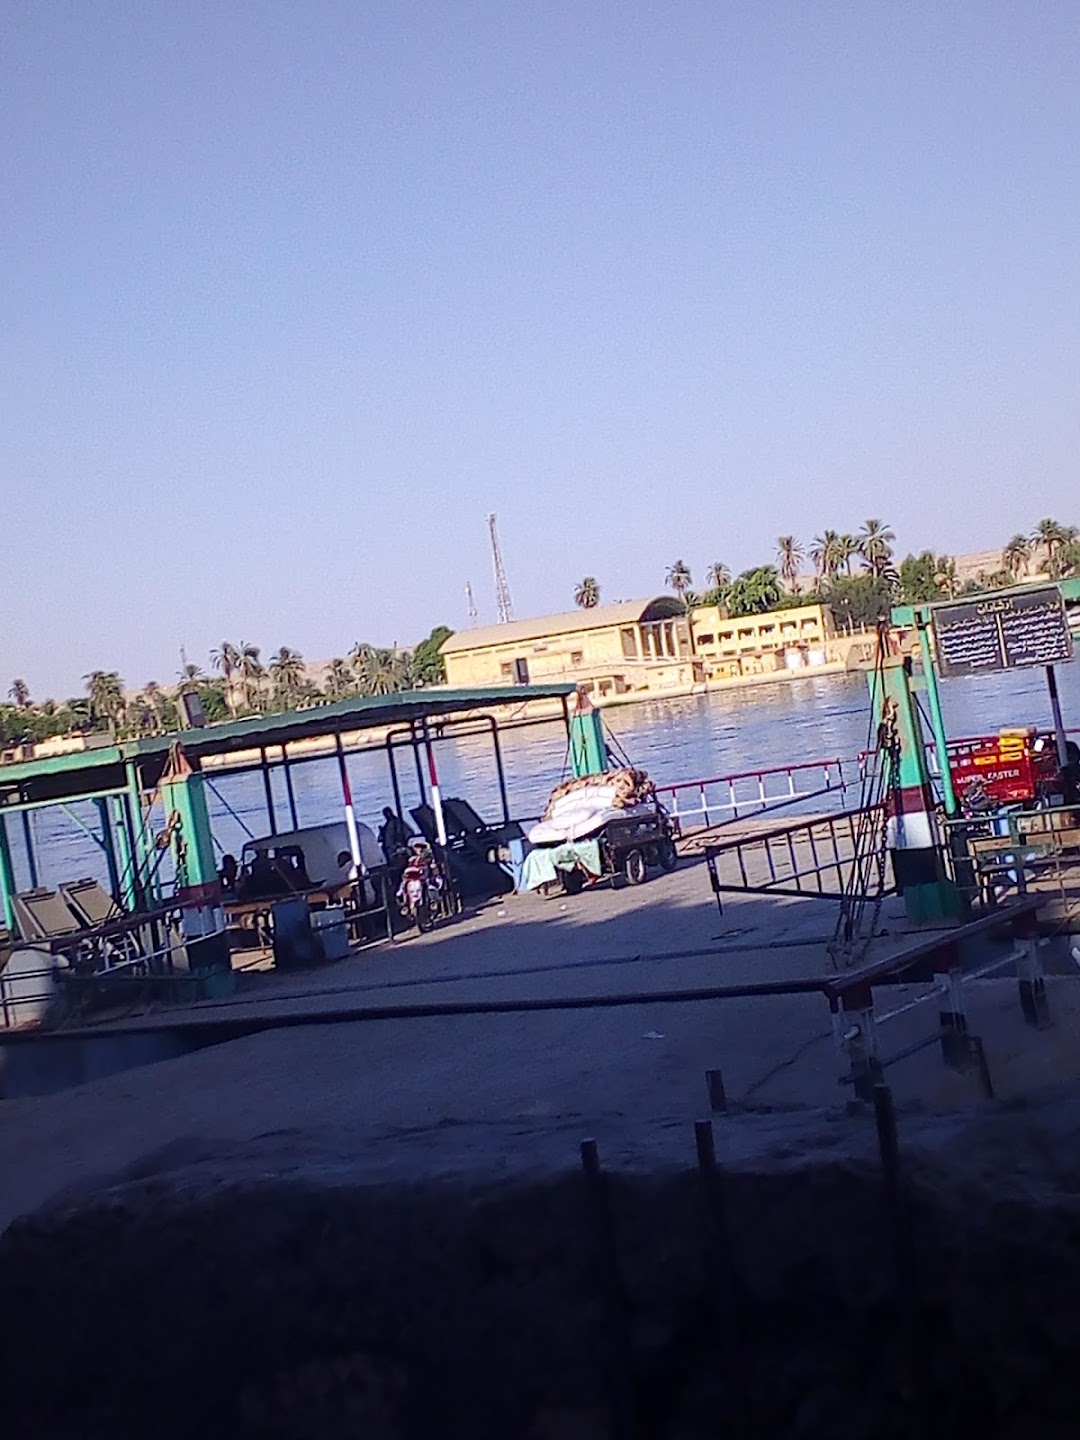 عبارة سيارات للجهة المقابلة من نهر النيل